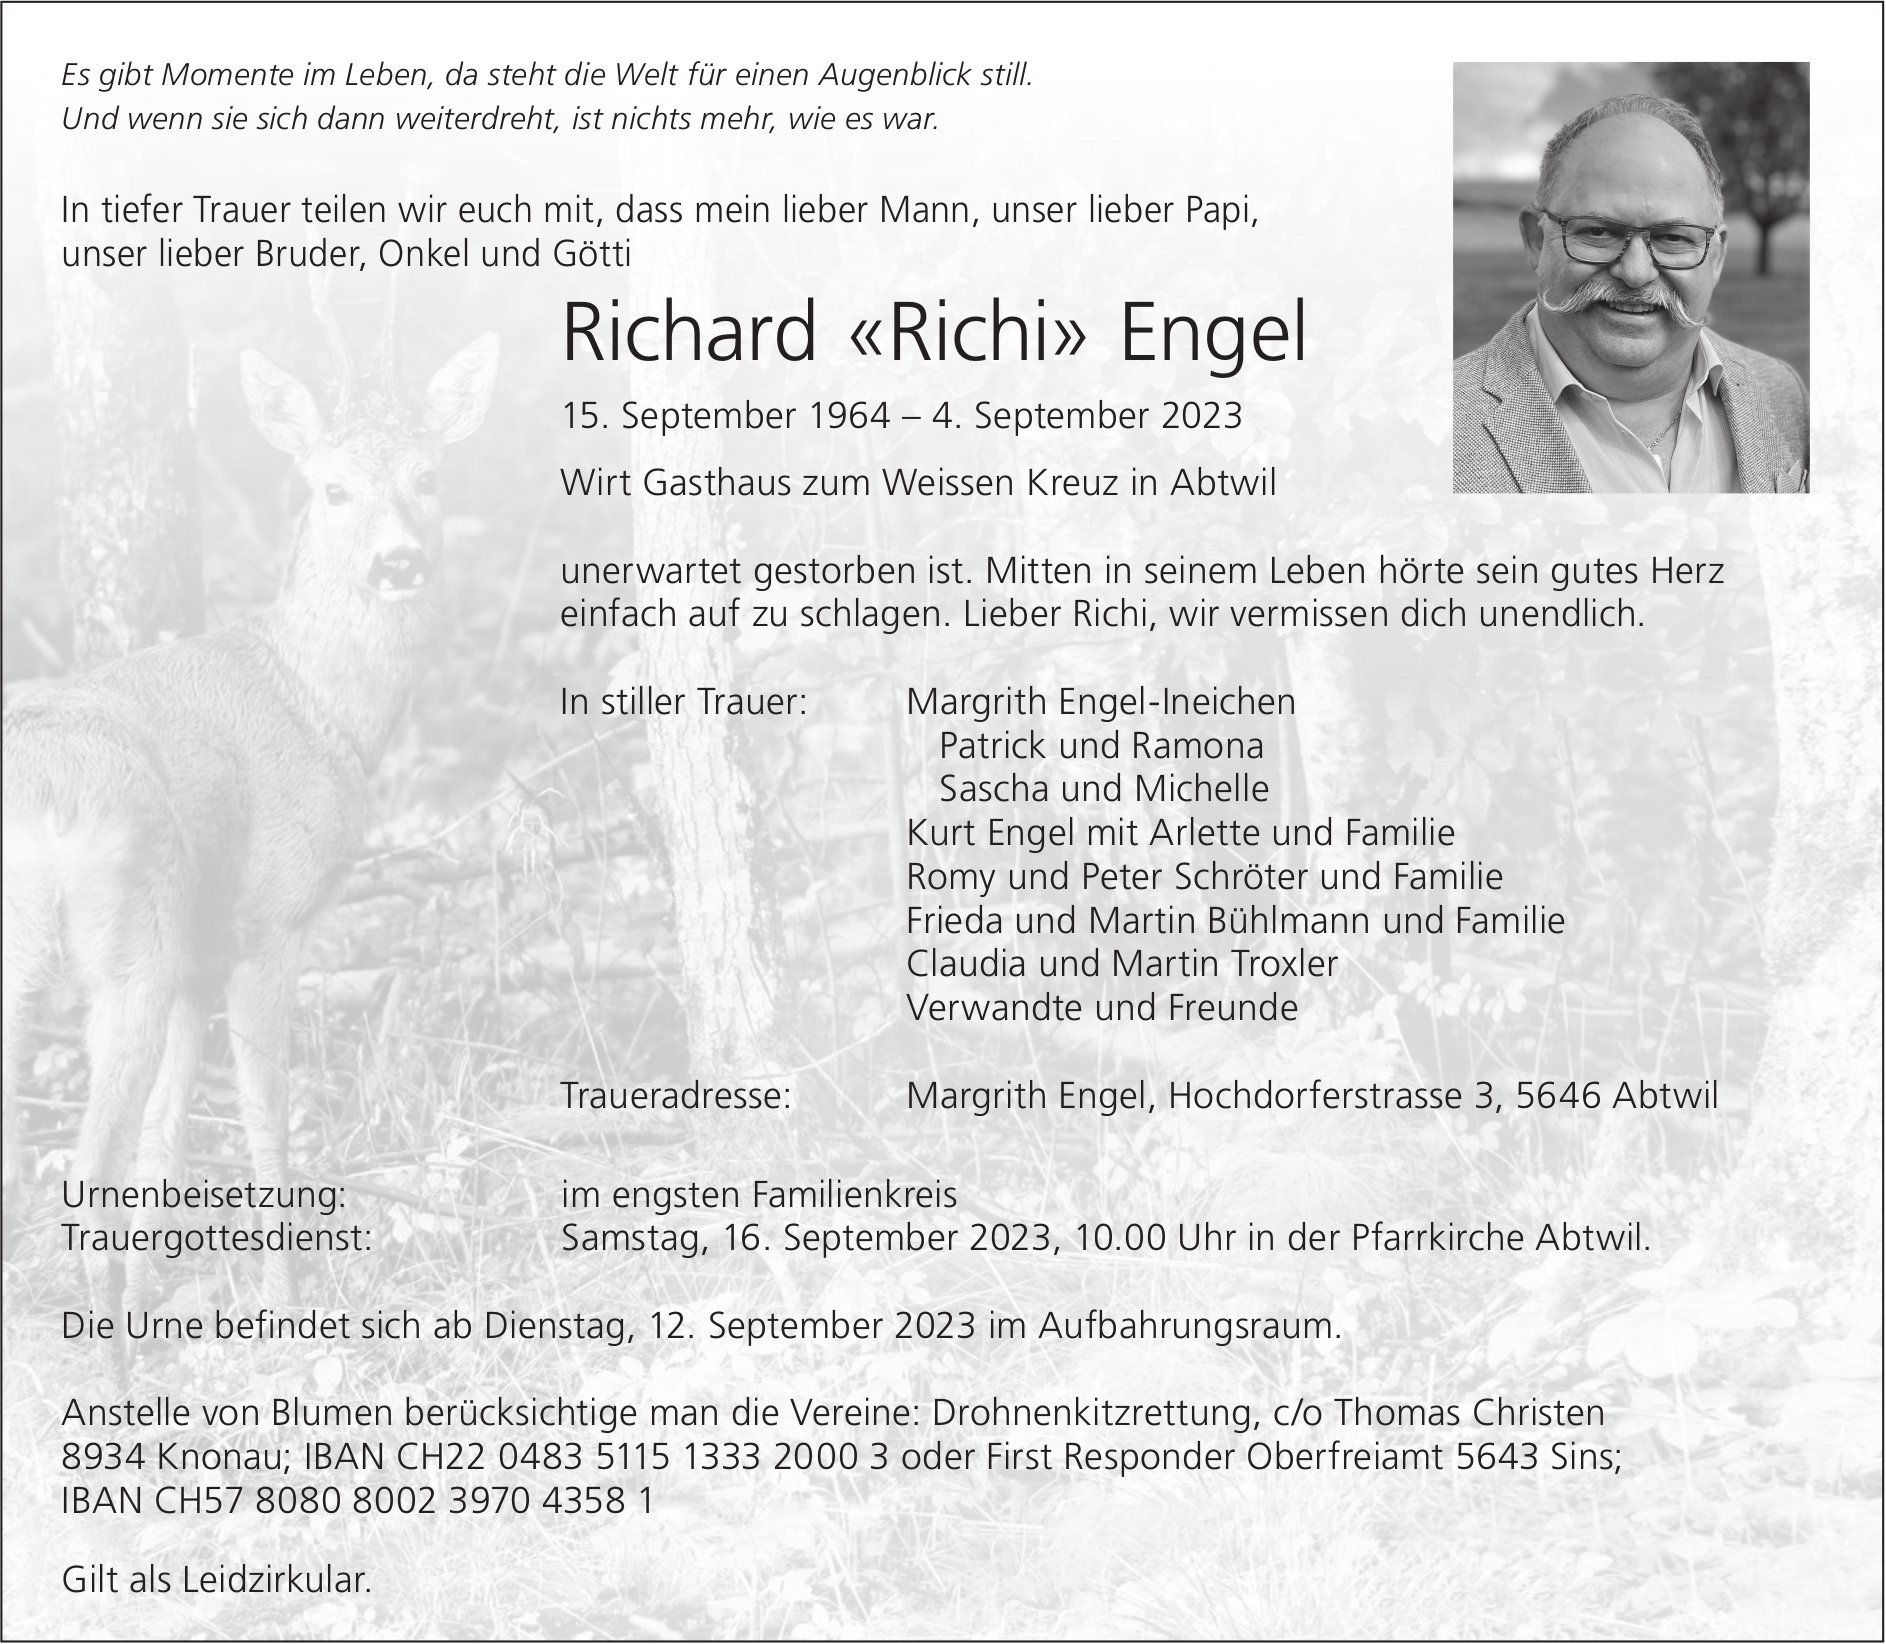 Engel Richard «Richi», September 2023 / TA